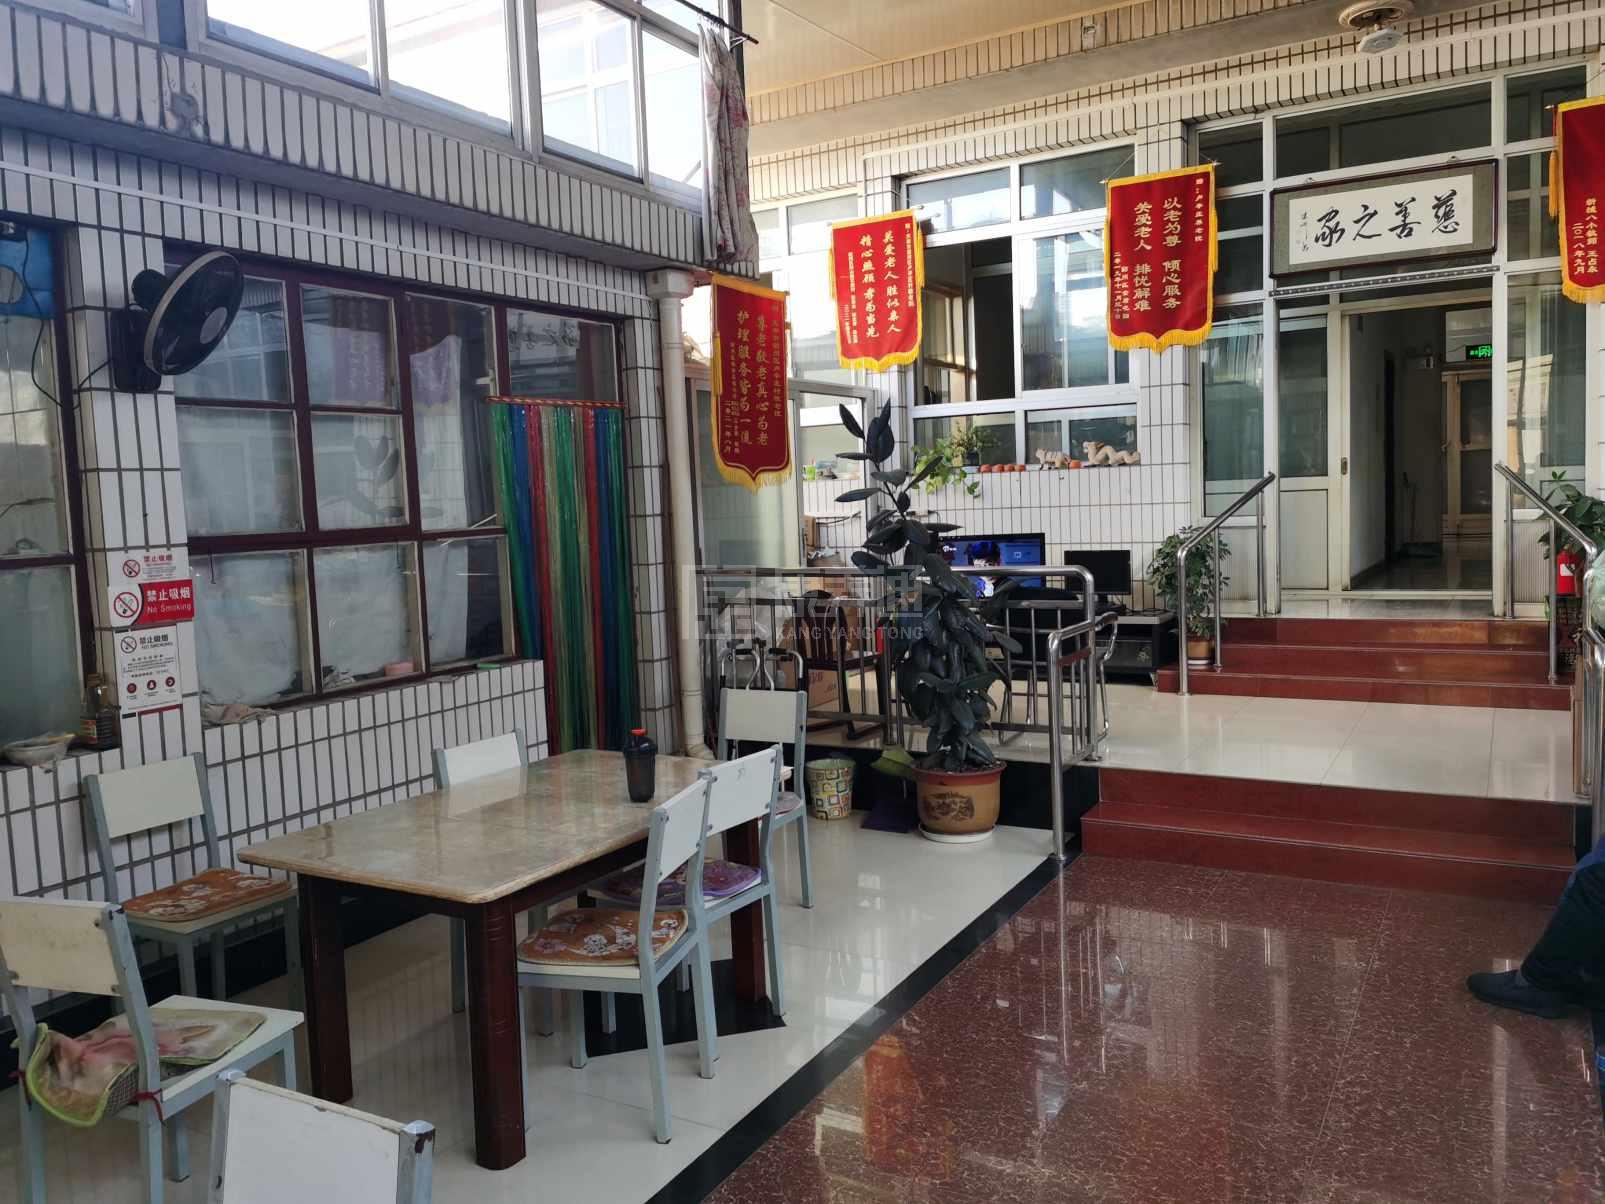 天津市蓟州区福寿轩养老服务站服务项目图1健康安全、营养均衡、味美可口